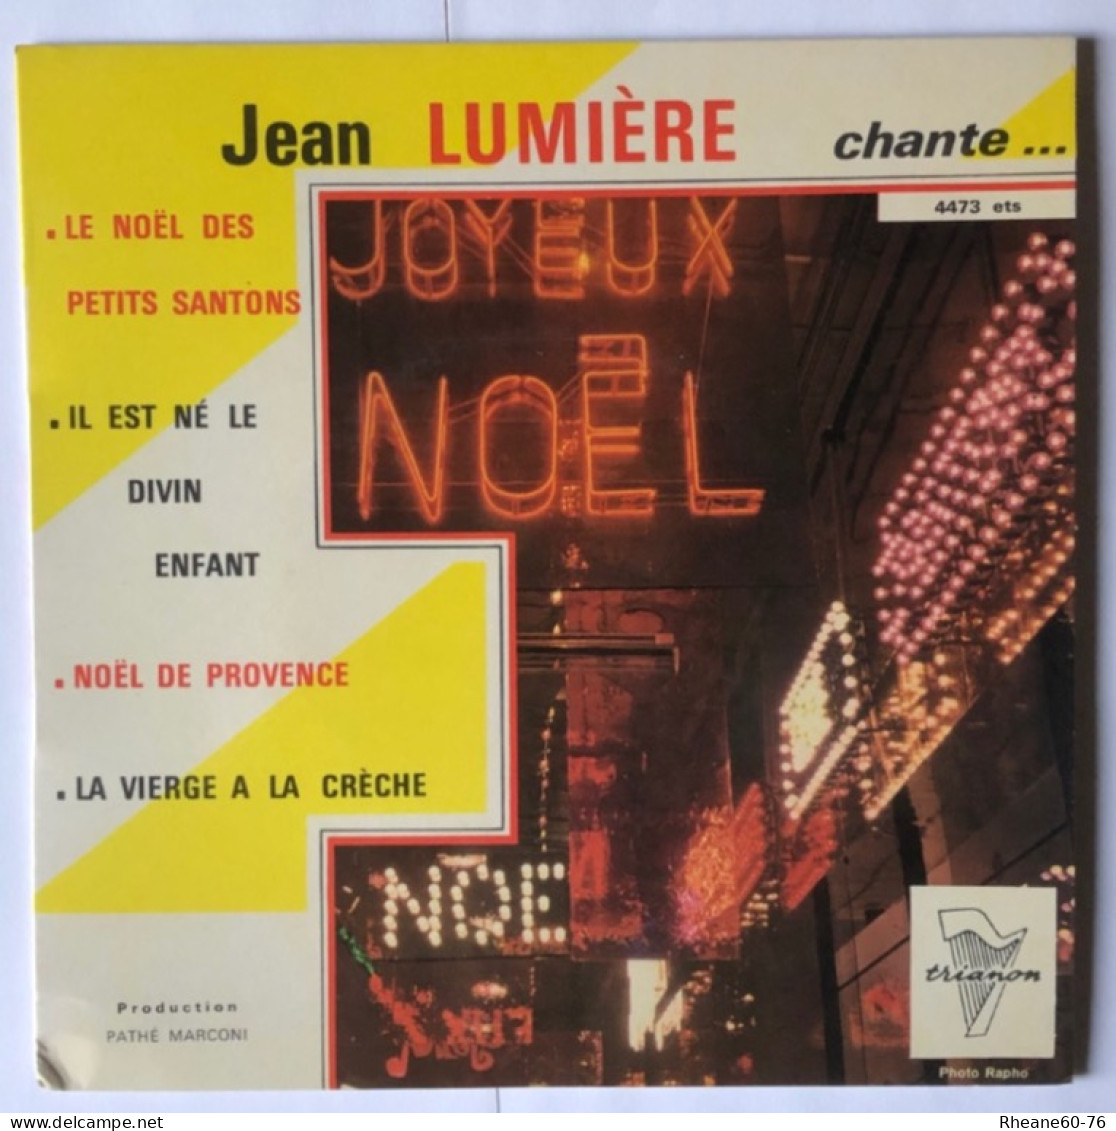 Trianon 4473 ETS - Jean Lumière Chante Noël … - Orchestre Direction Marcel Cariven - Pathé Marconi - Formats Spéciaux